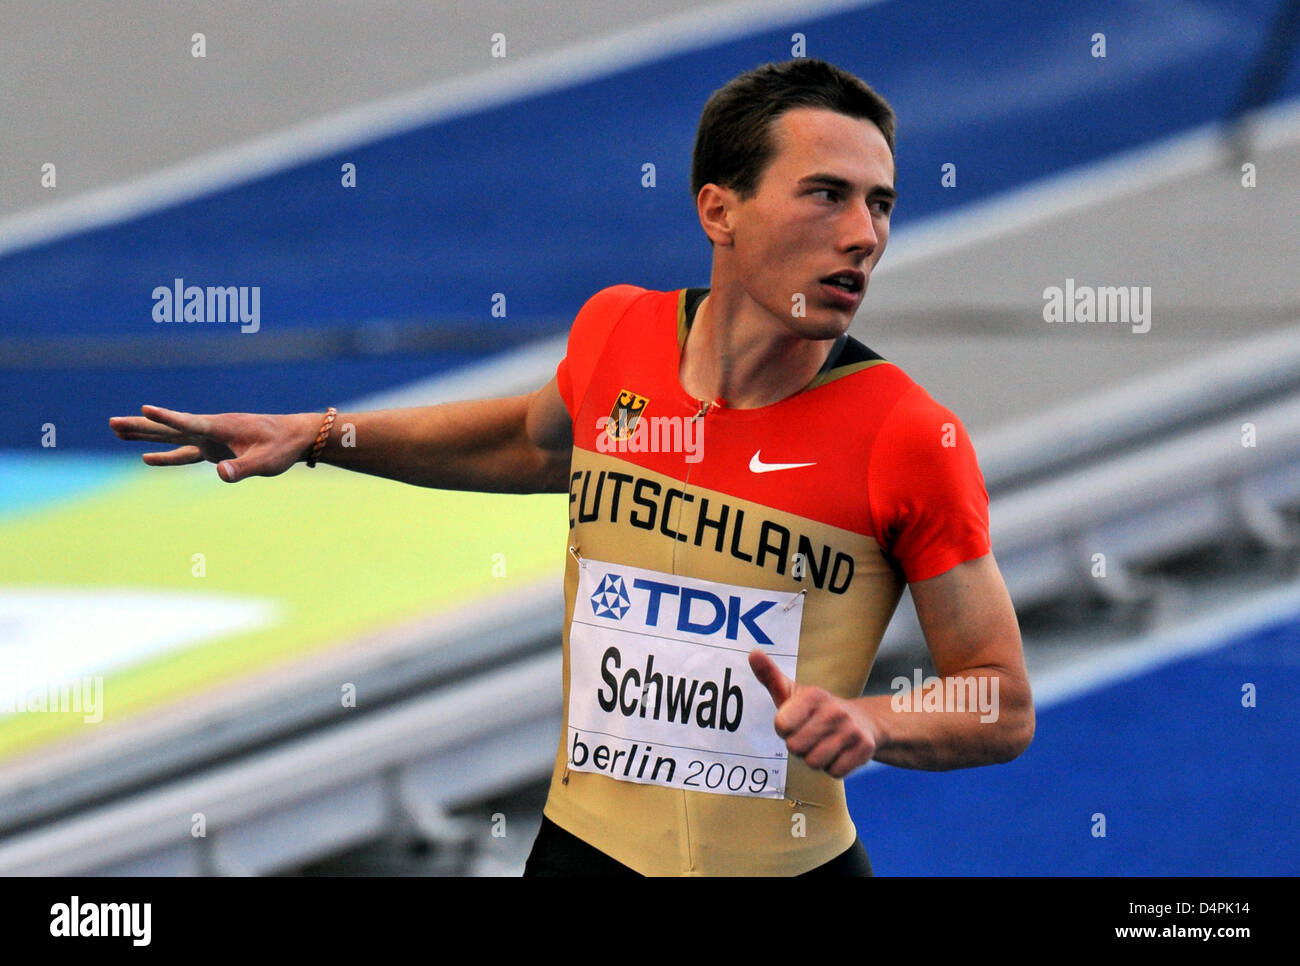 L ?Allemagne Stefan Schwab participe à un 100m aux 12e Championnats du monde IAAF d'athlétisme de Berlin, Allemagne, 15 août 2009. Photo : Bernd Thissen Banque D'Images